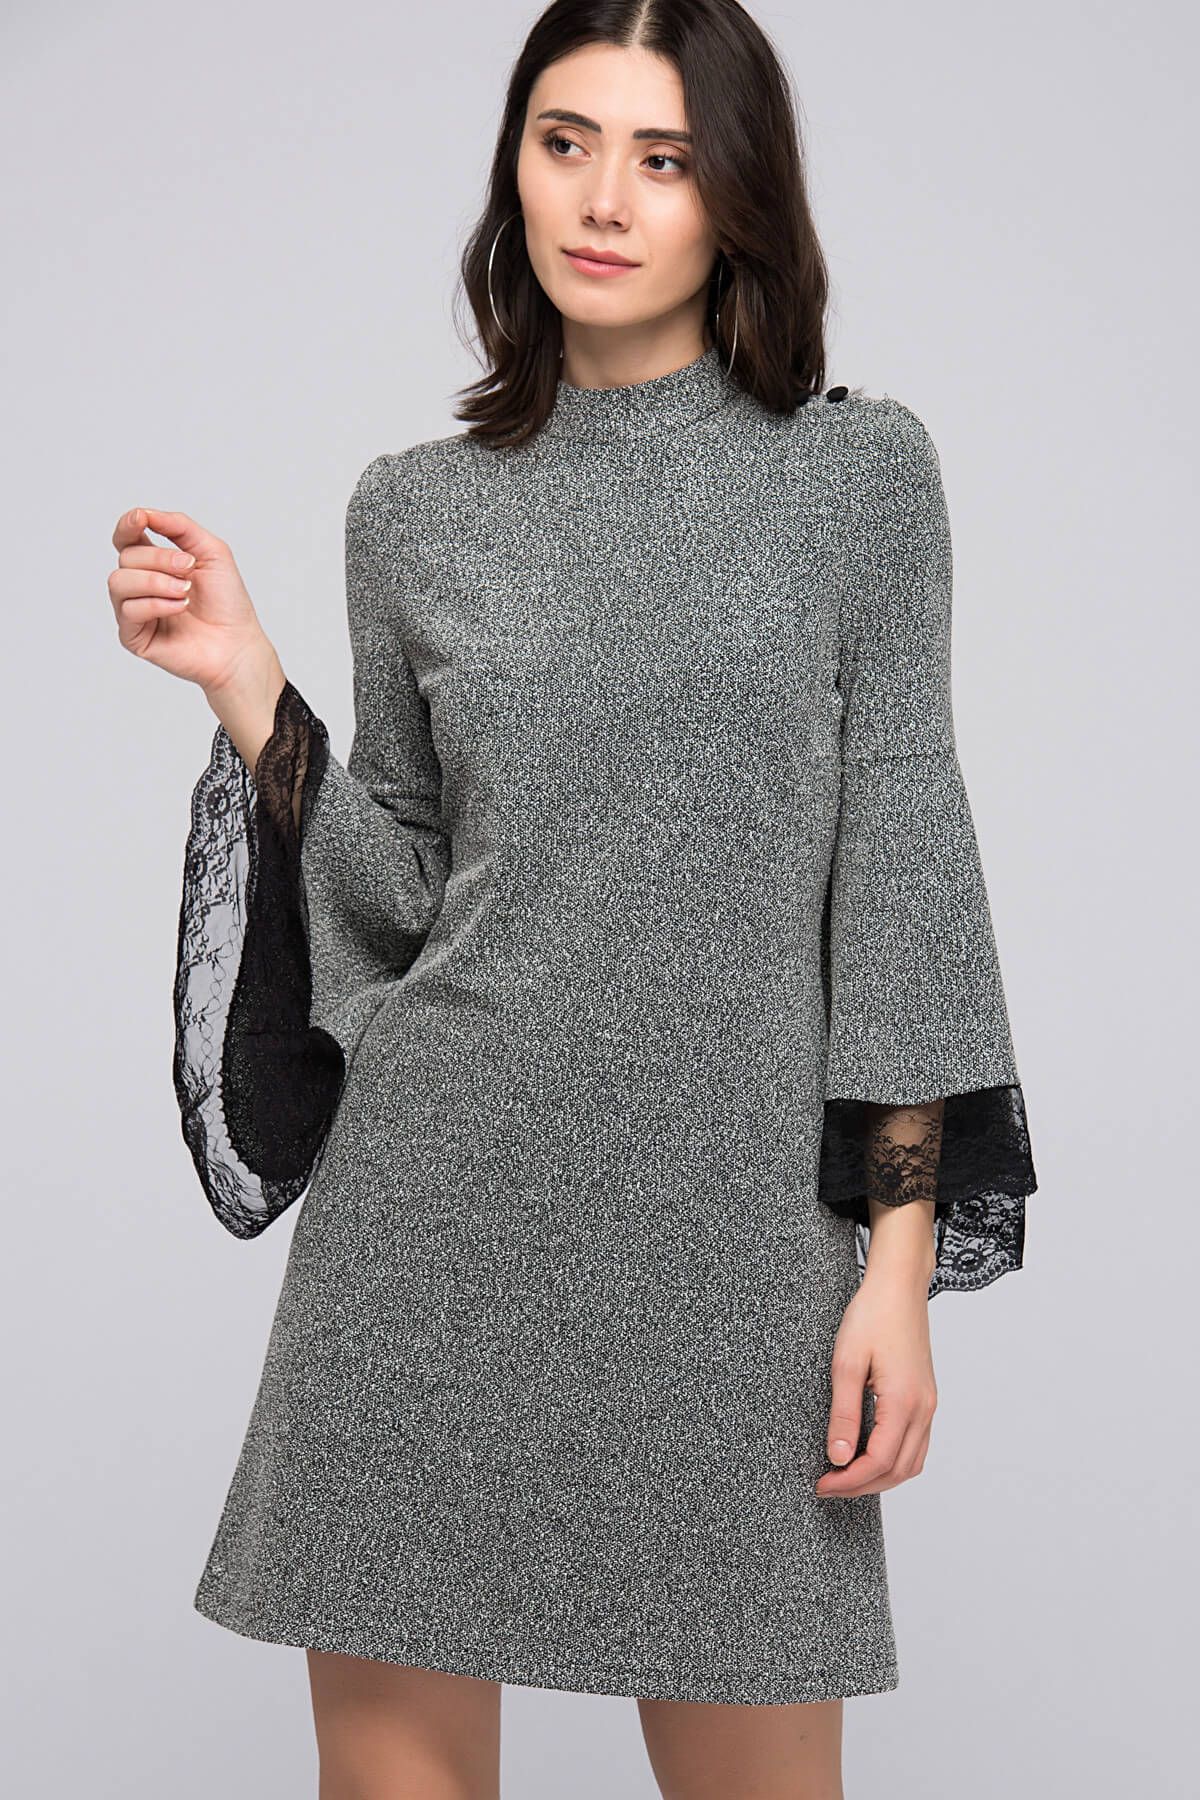 İroni Kadın Siyah Buklet Volanlı Tunik Elbise 3945-981